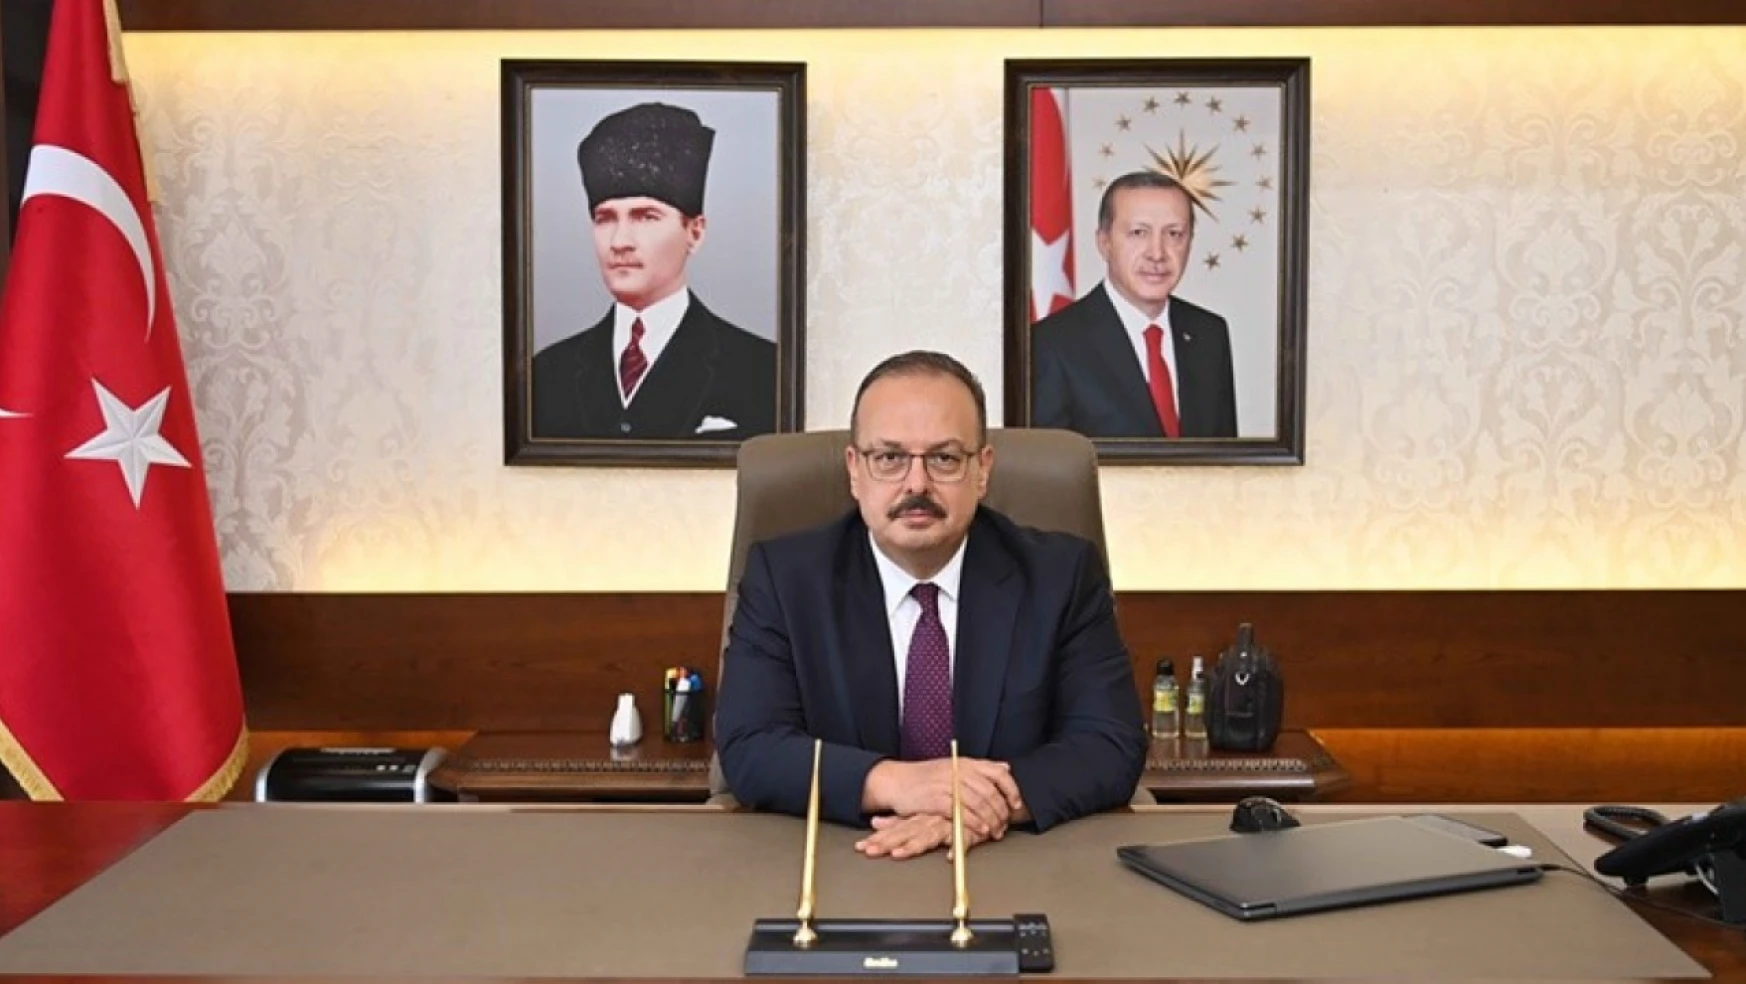 Vali Canbolat: 'Atatürk, her dönemde güncelliğini koruyan büyük bir liderdir'